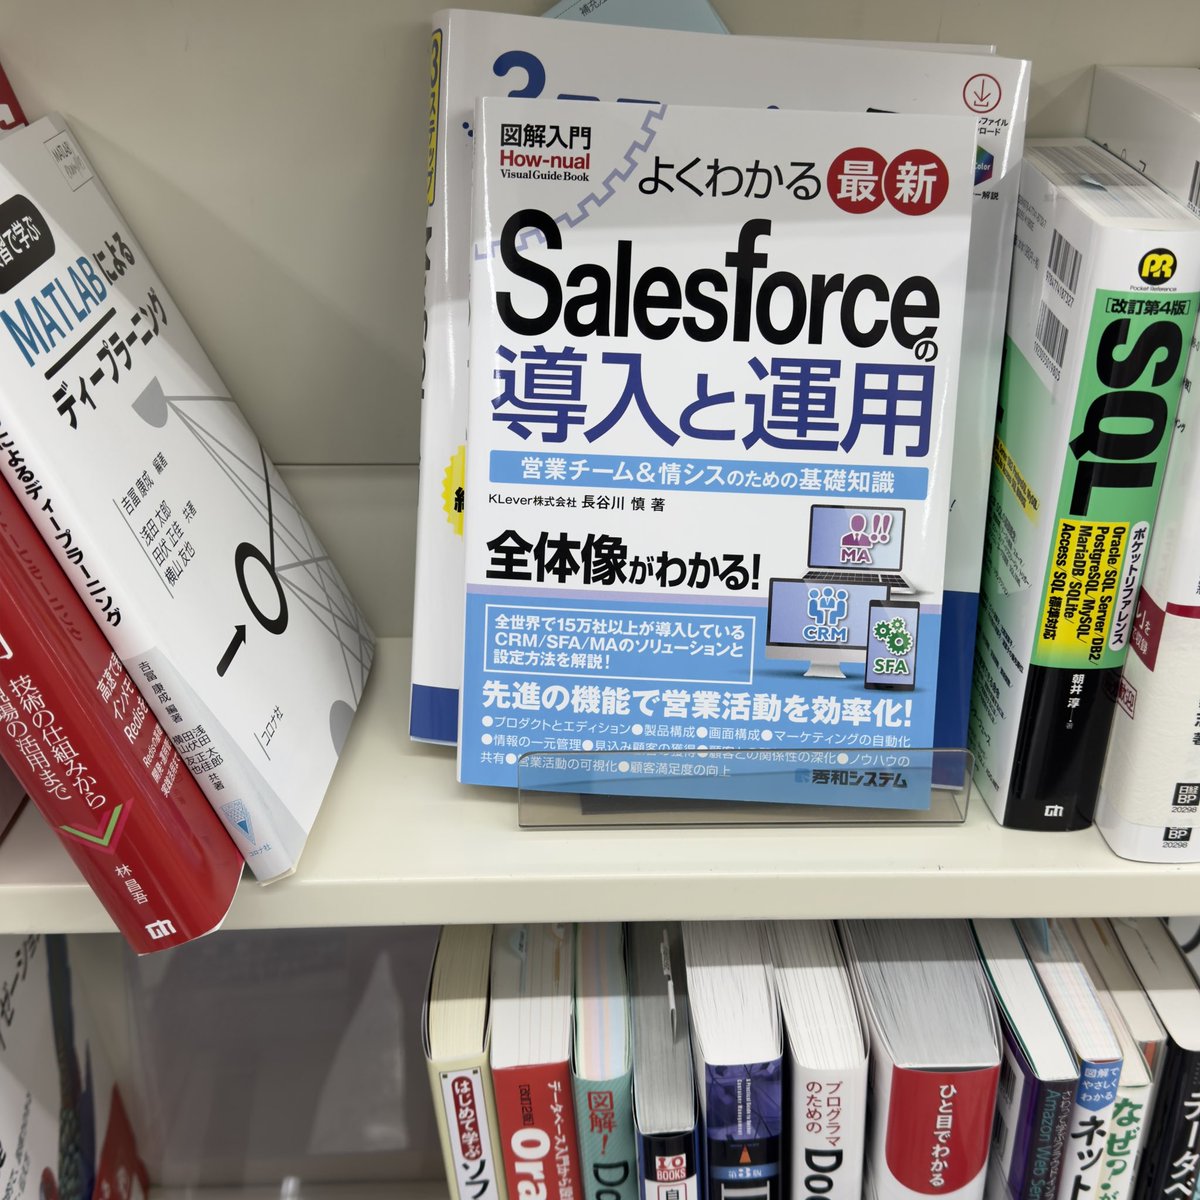 発見！
よくわかる最新のSalesforceの導入と運用。
happy.klever.jp/sfbook